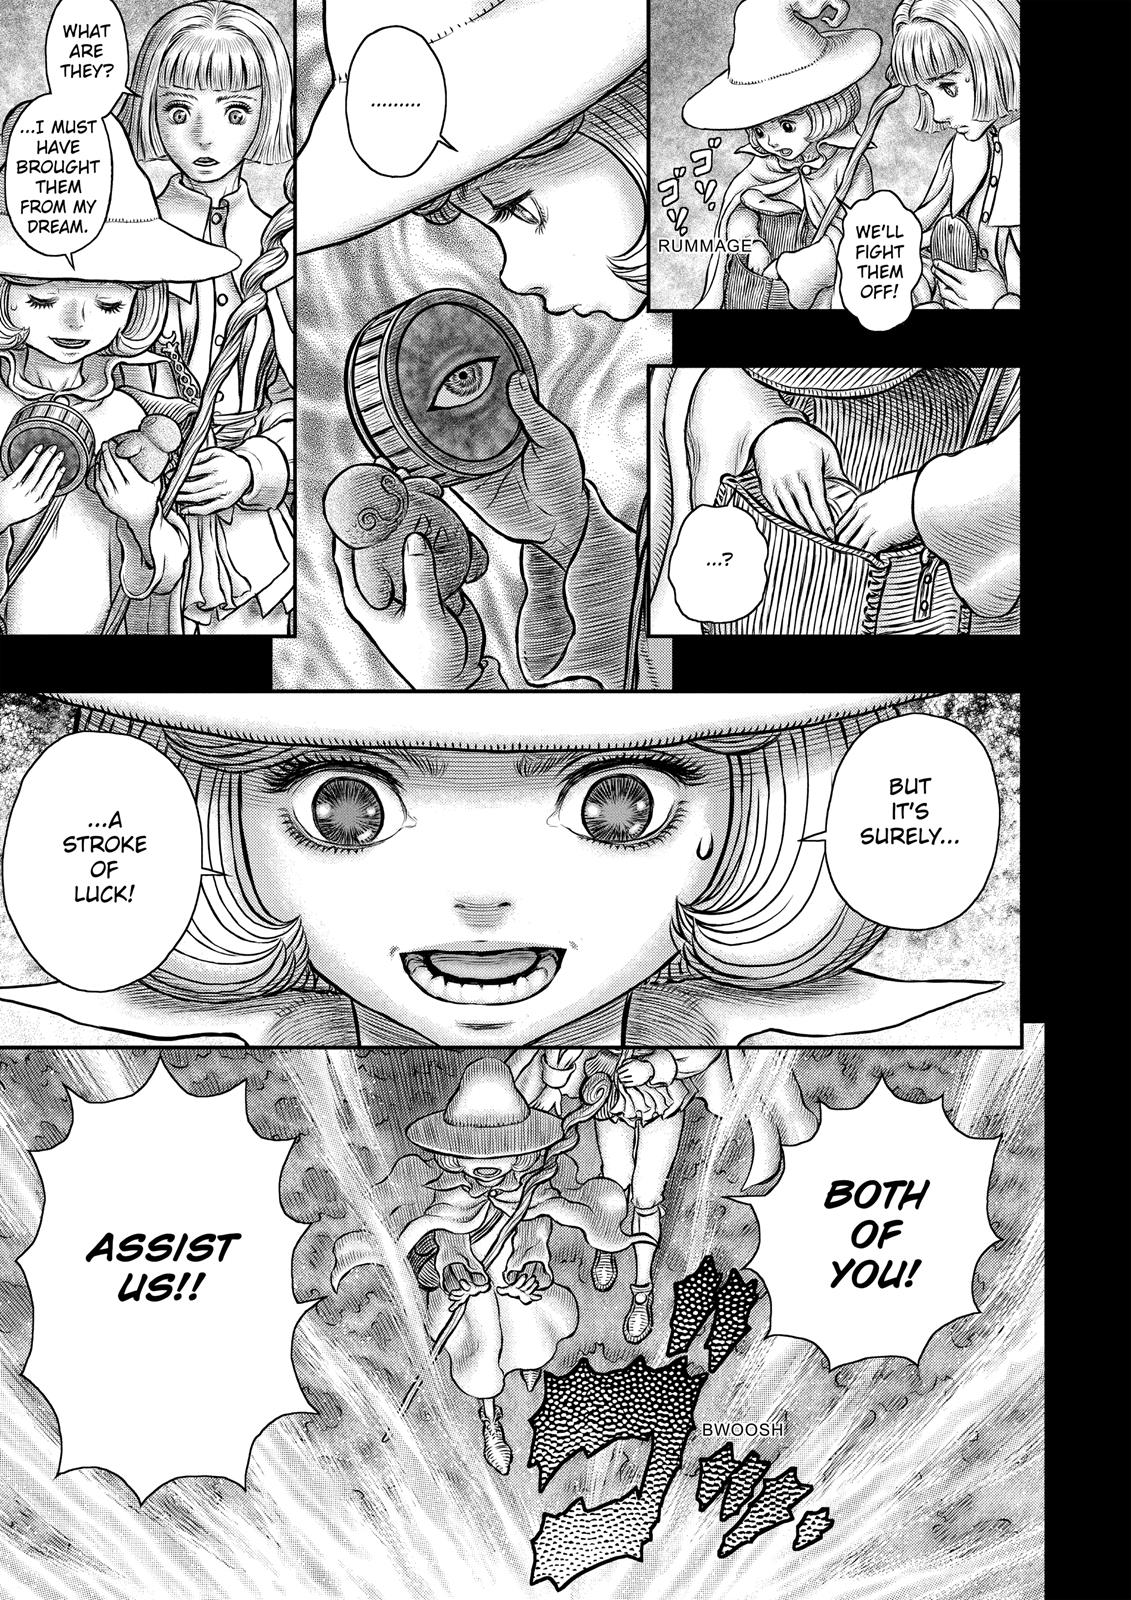 Berserk Manga Chapter 349 image 15